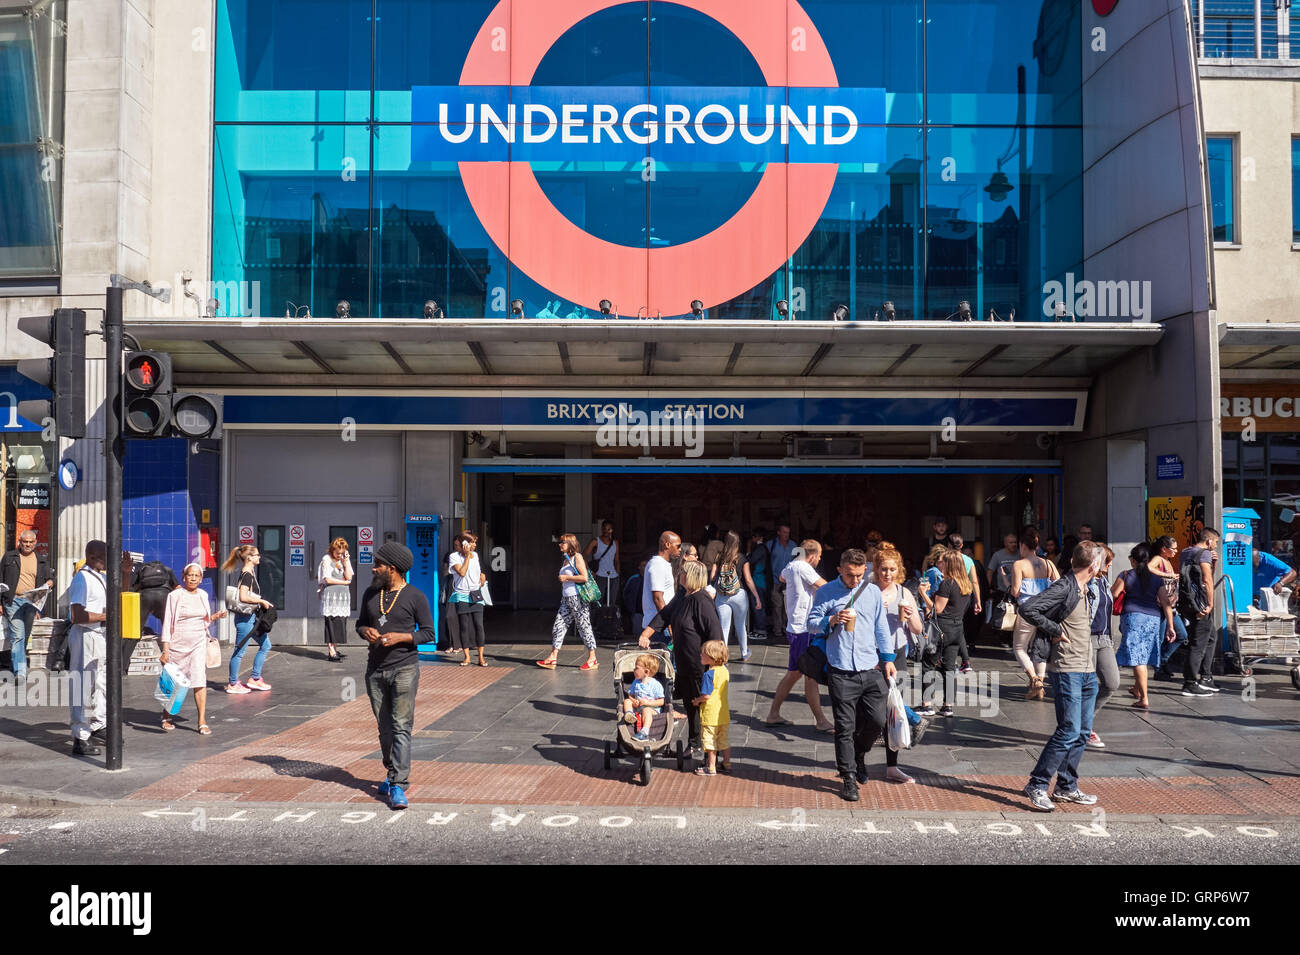 Entrée de la station de métro de Brixton, Londres Angleterre Royaume-Uni UK Banque D'Images